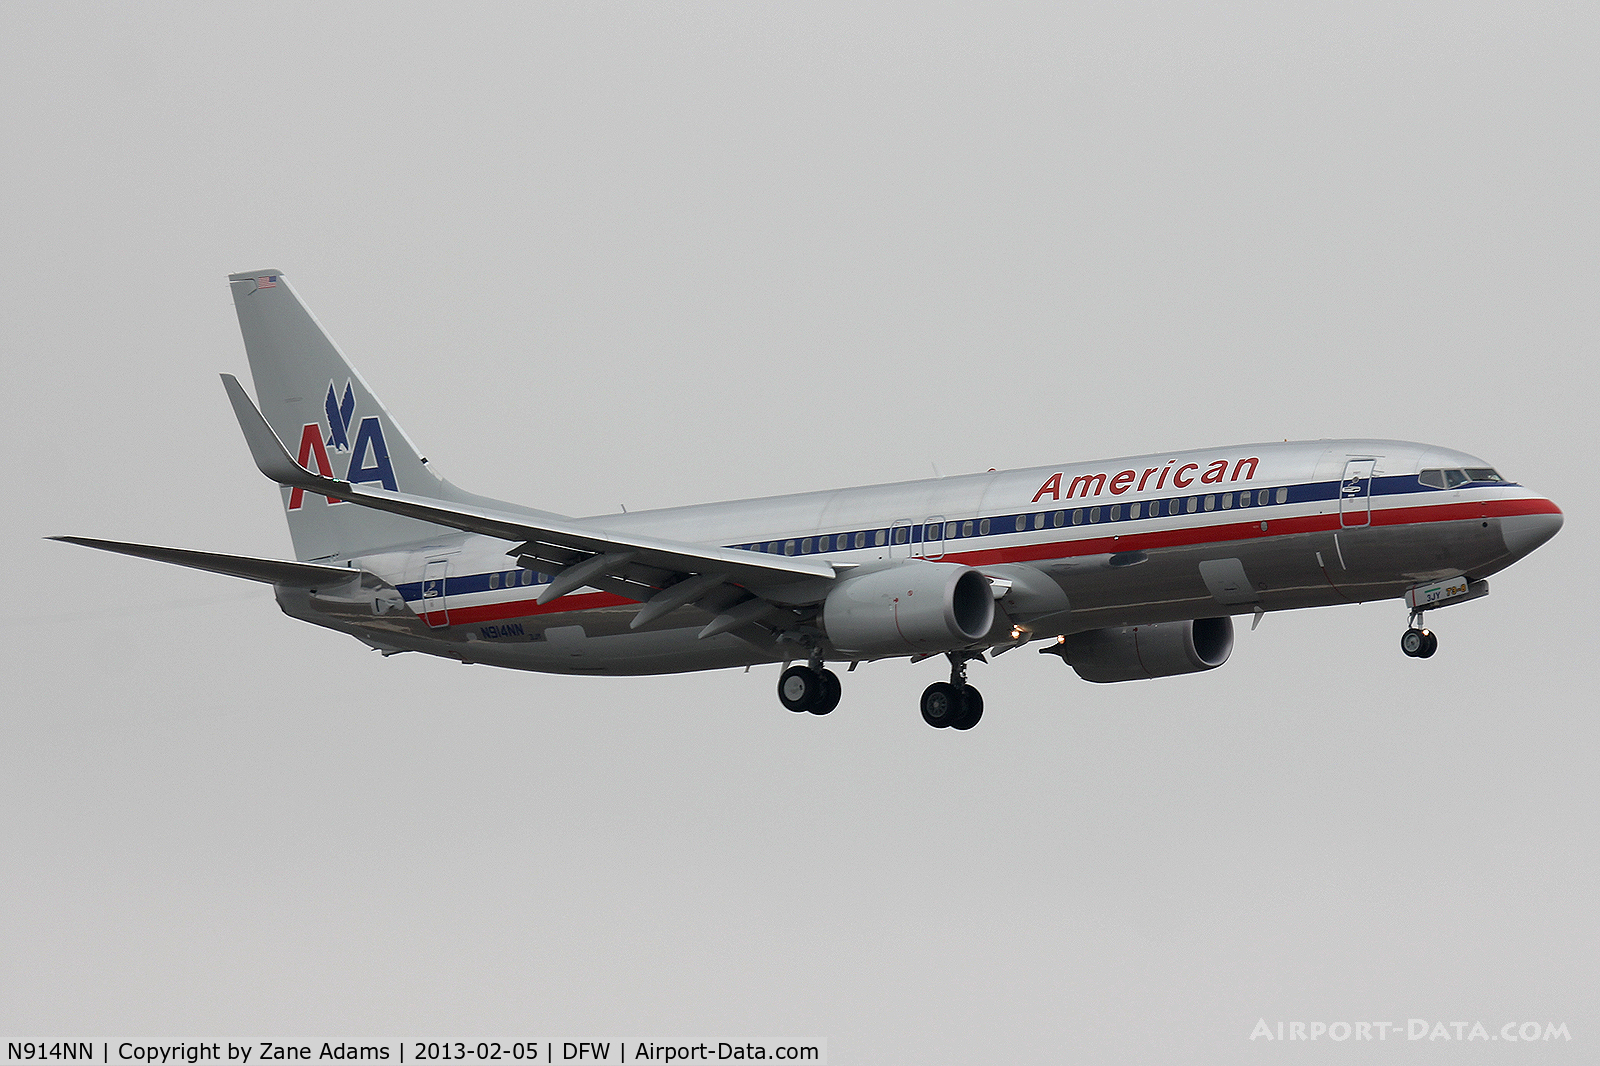 N914NN, 2012 Boeing 737-823 C/N 31161, American Airlines at DFW Airport